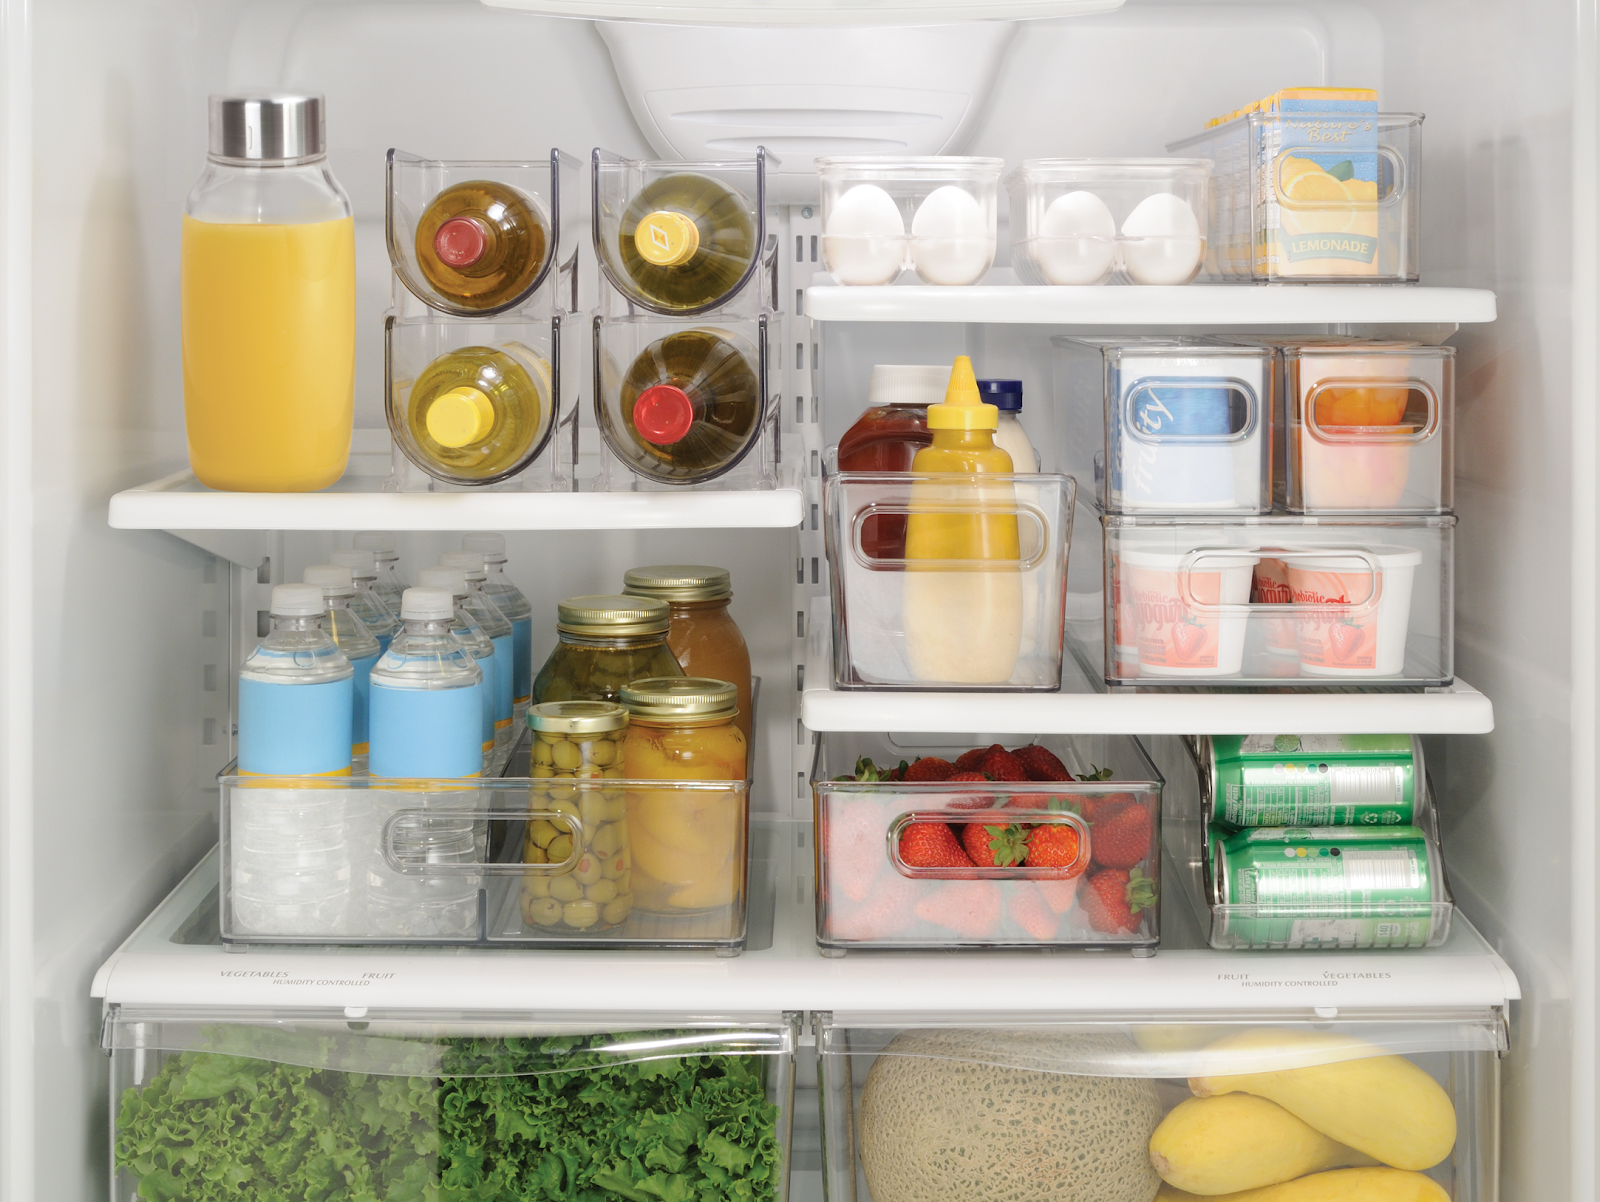 8 bước cực đơn giản để tủ lạnh gọn gàng hơn chỉ trong 5 phút - Ảnh 3.